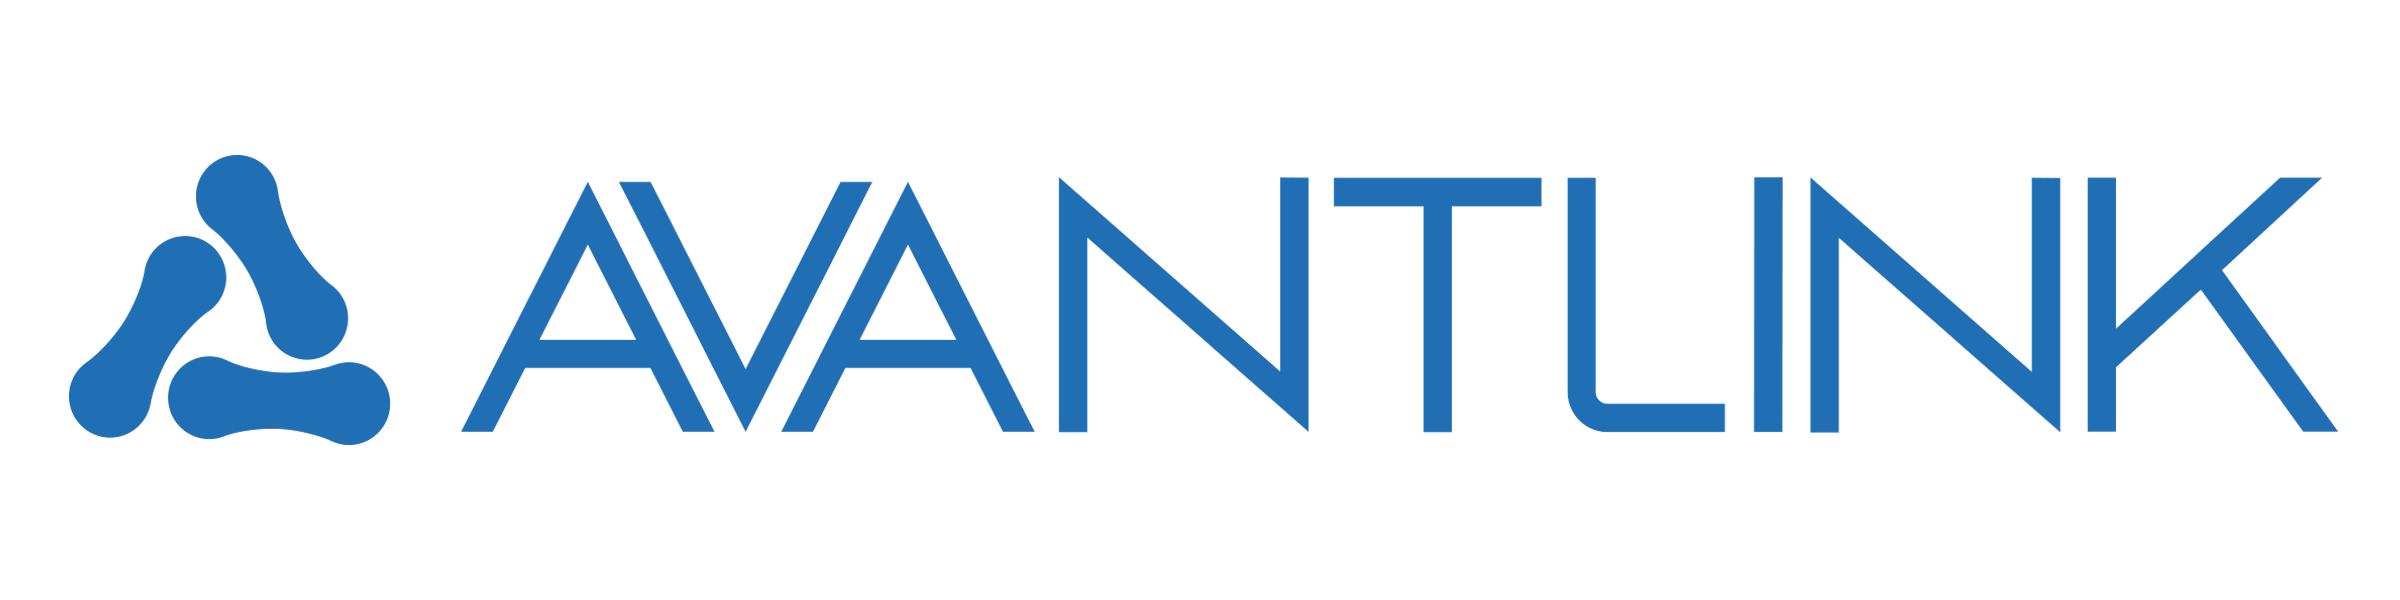 AvantLink Merchant Referral Program